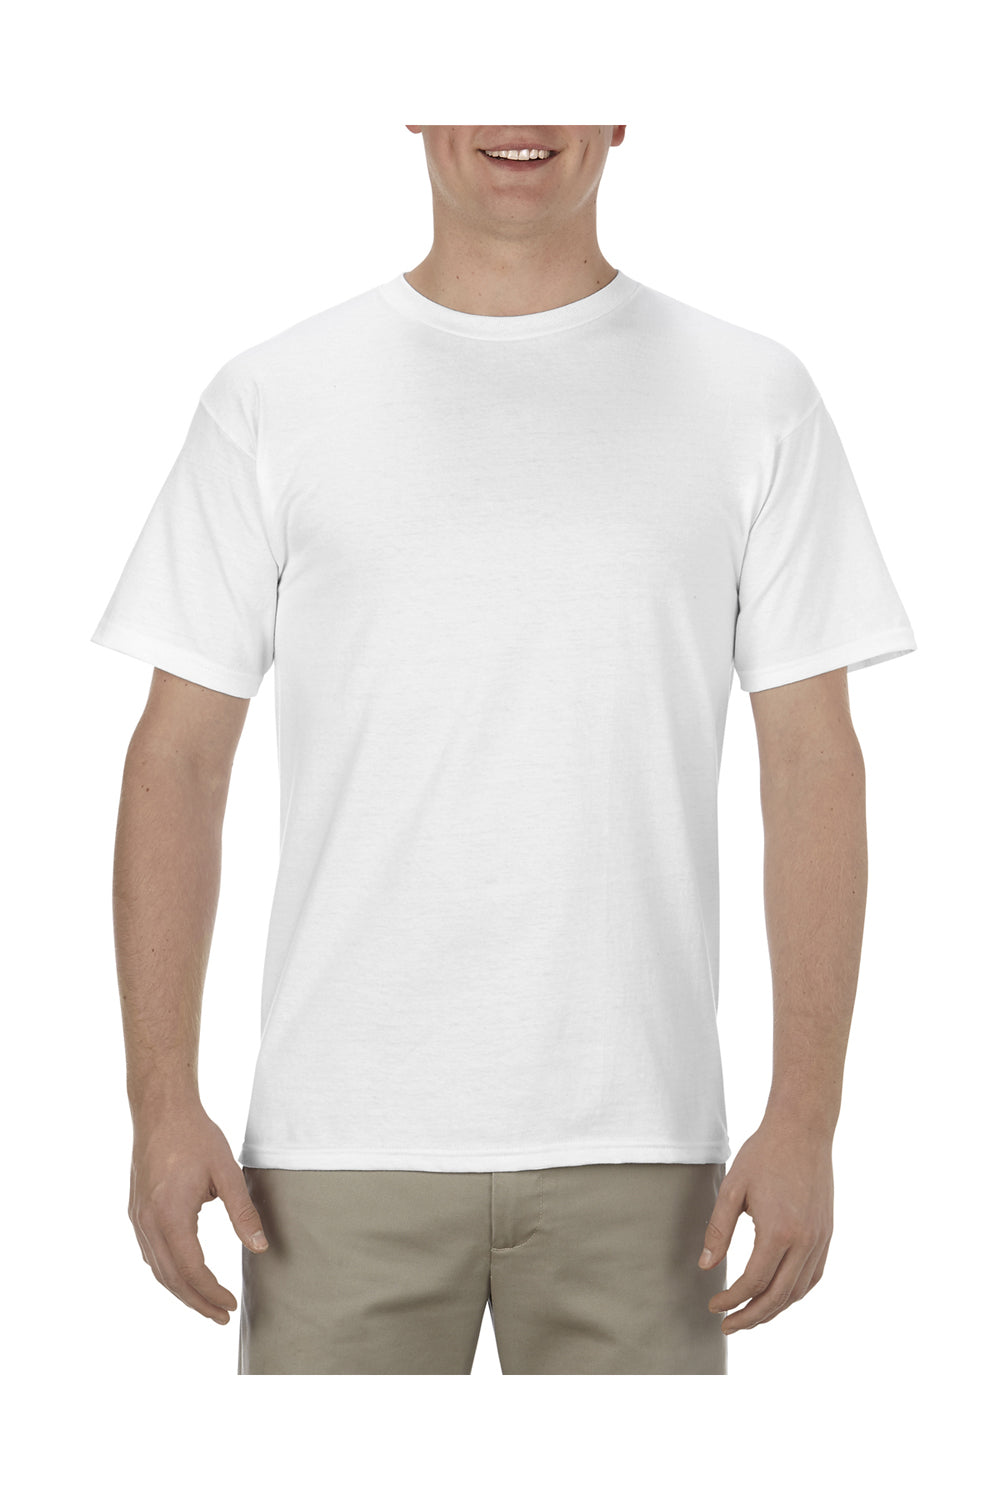 Alstyle AL1701 Mens Soft Spun Short Sleeve Crewneck T-Shirt White Front